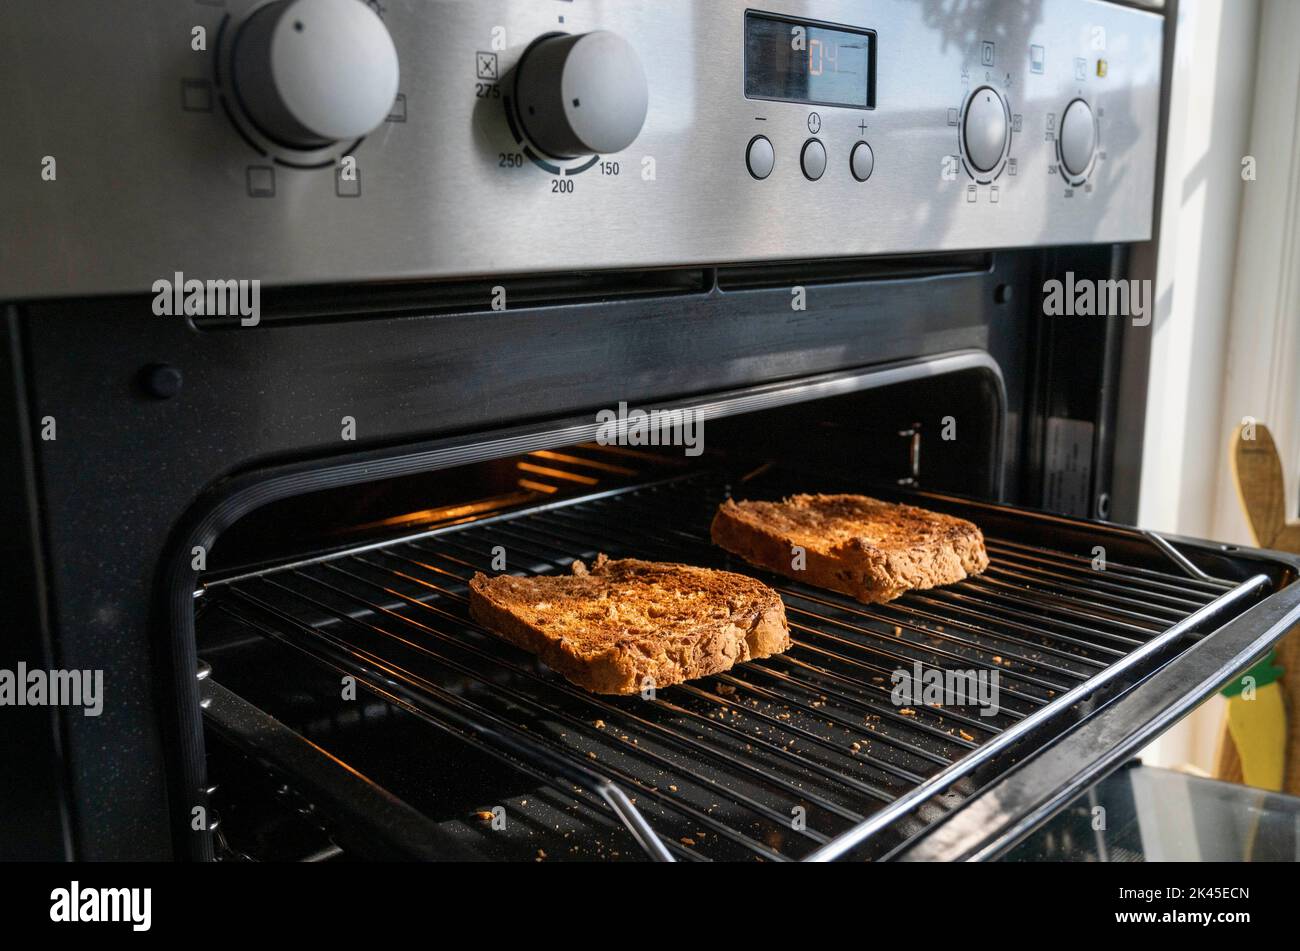 Faire du pain grillé avec du pain granary brun sous un gril électrique dans la cuisine Banque D'Images